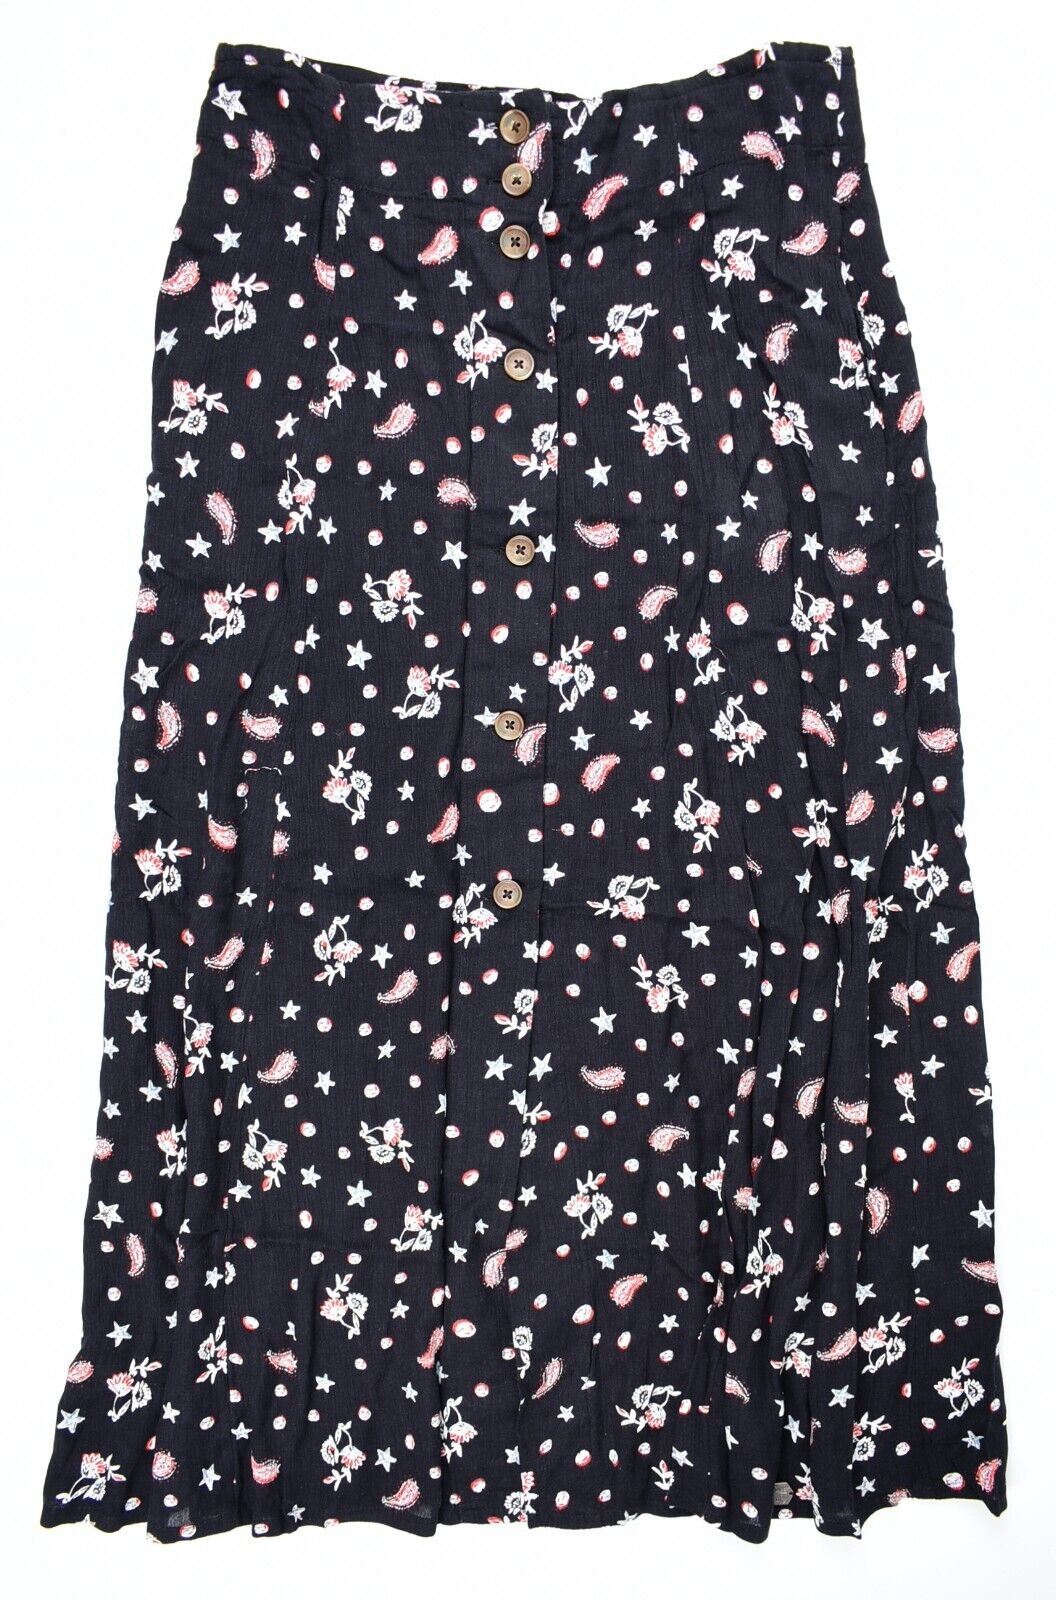 SUPERDRY Womens LAYLA Midi Skirt, Black/Petra Paisley, size XS/ UK 8